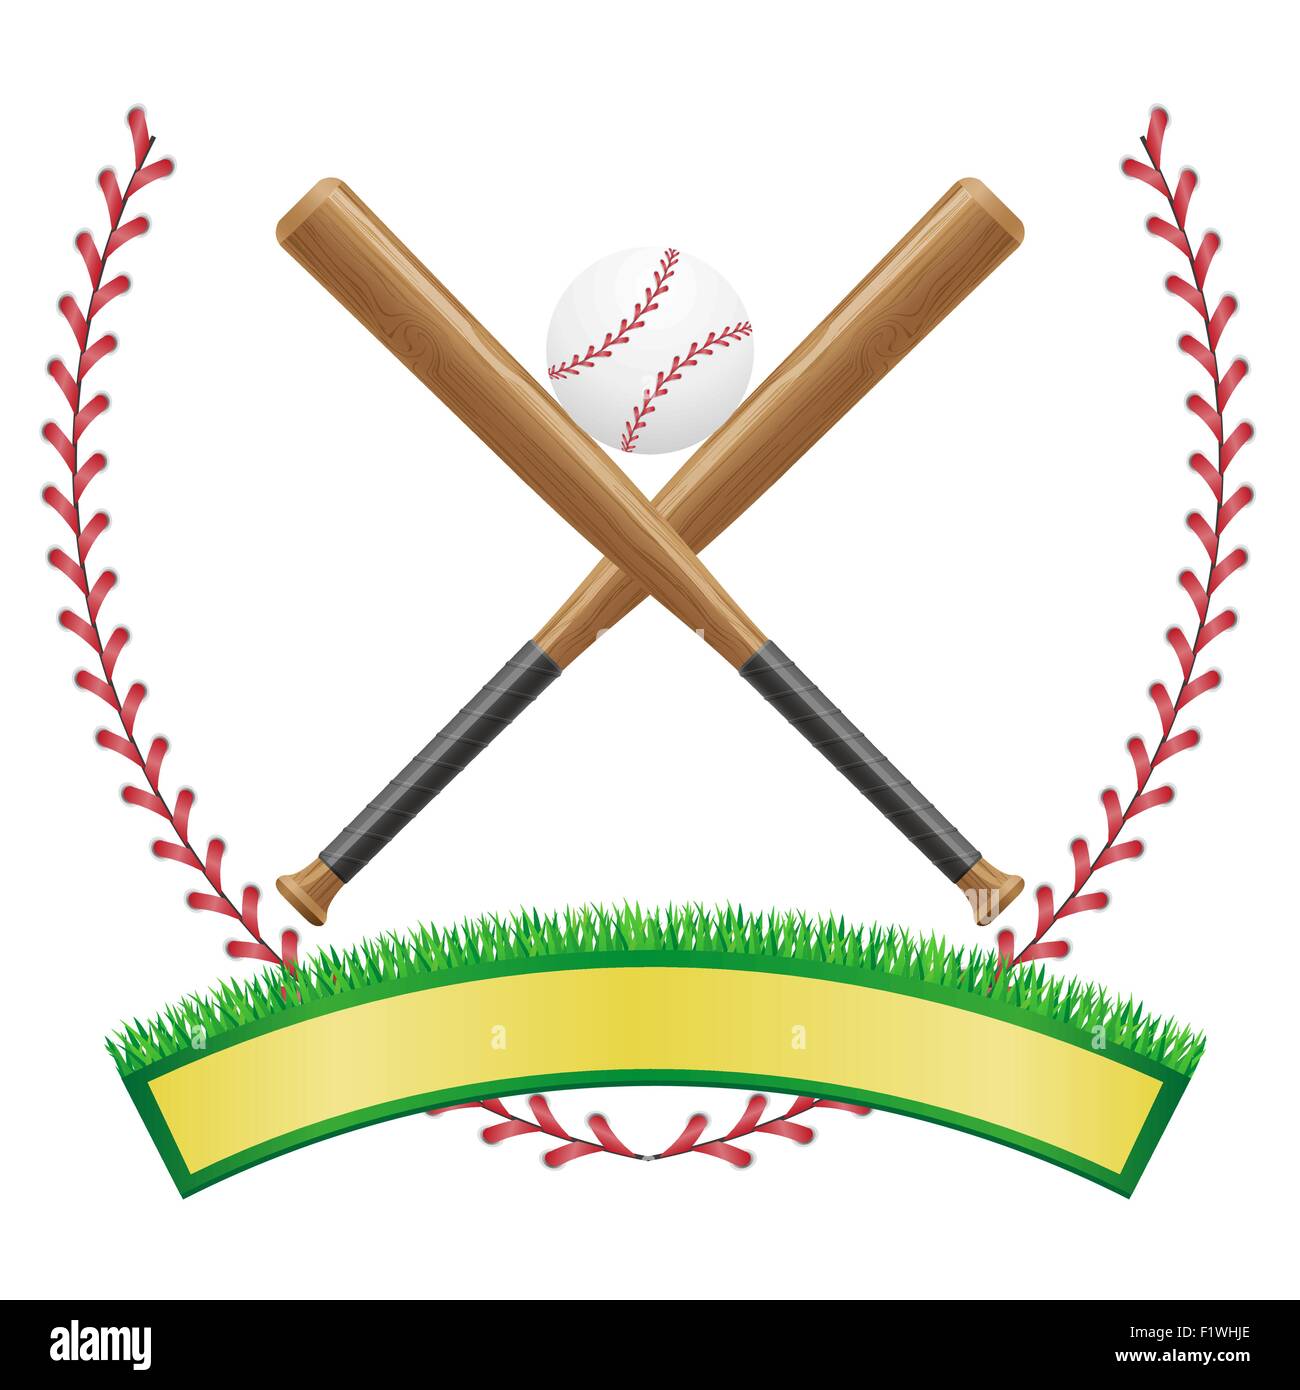 baseball banner emblem vector illustration isolated on white background Stock Vector